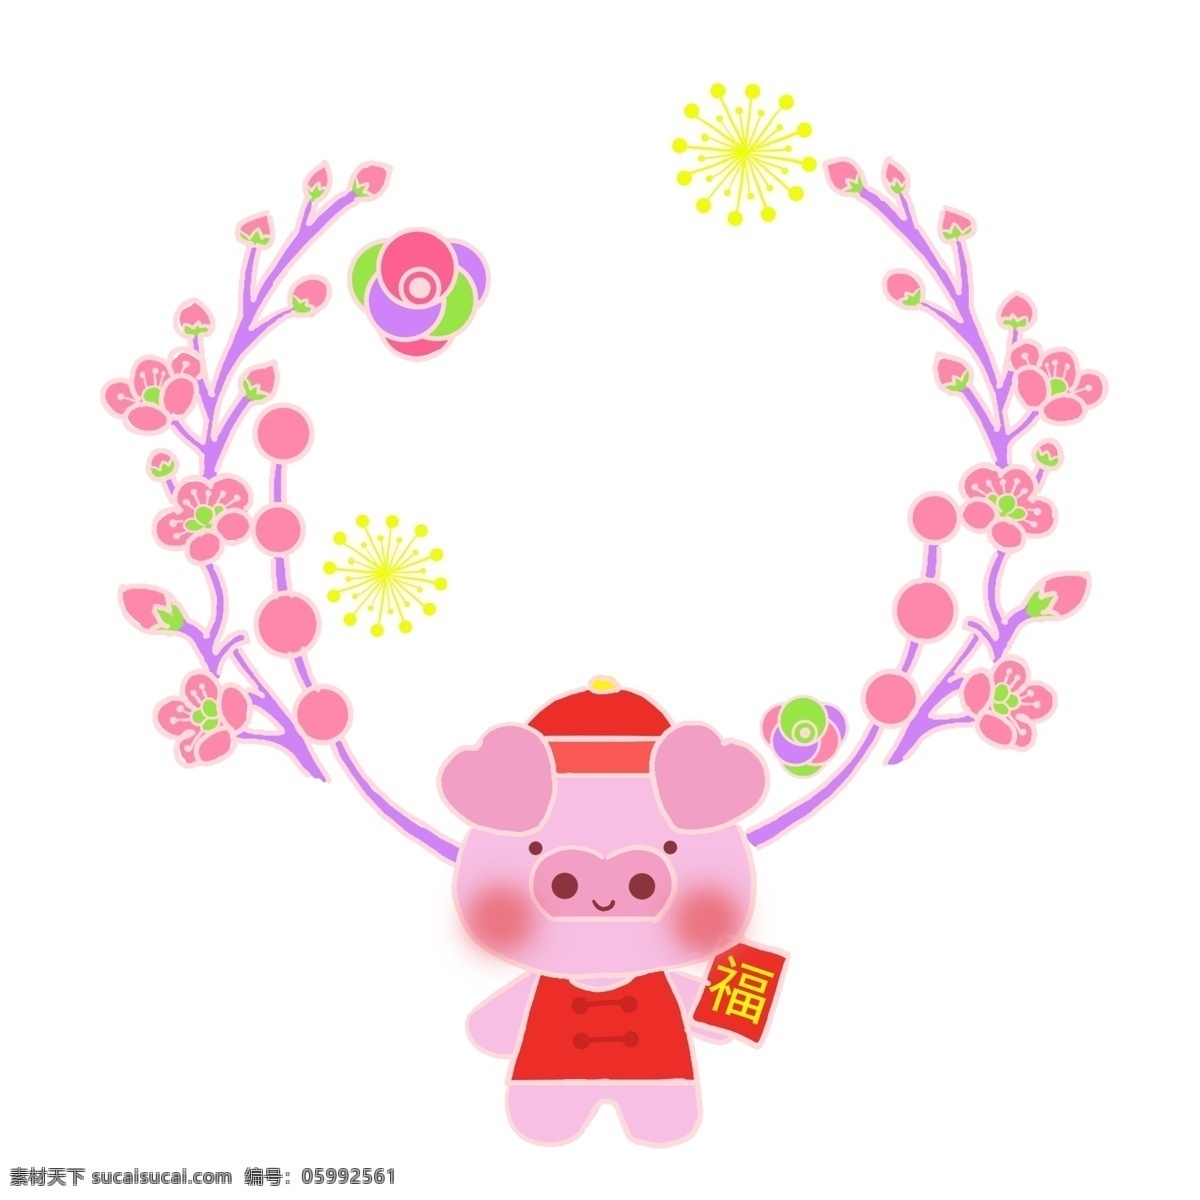 粉色 福 猪 边框 插画 粉色的小猪 可爱的小猪 宝宝 粉色边框 粉色花朵 浅绿色 烟花 装饰 漂亮的边框